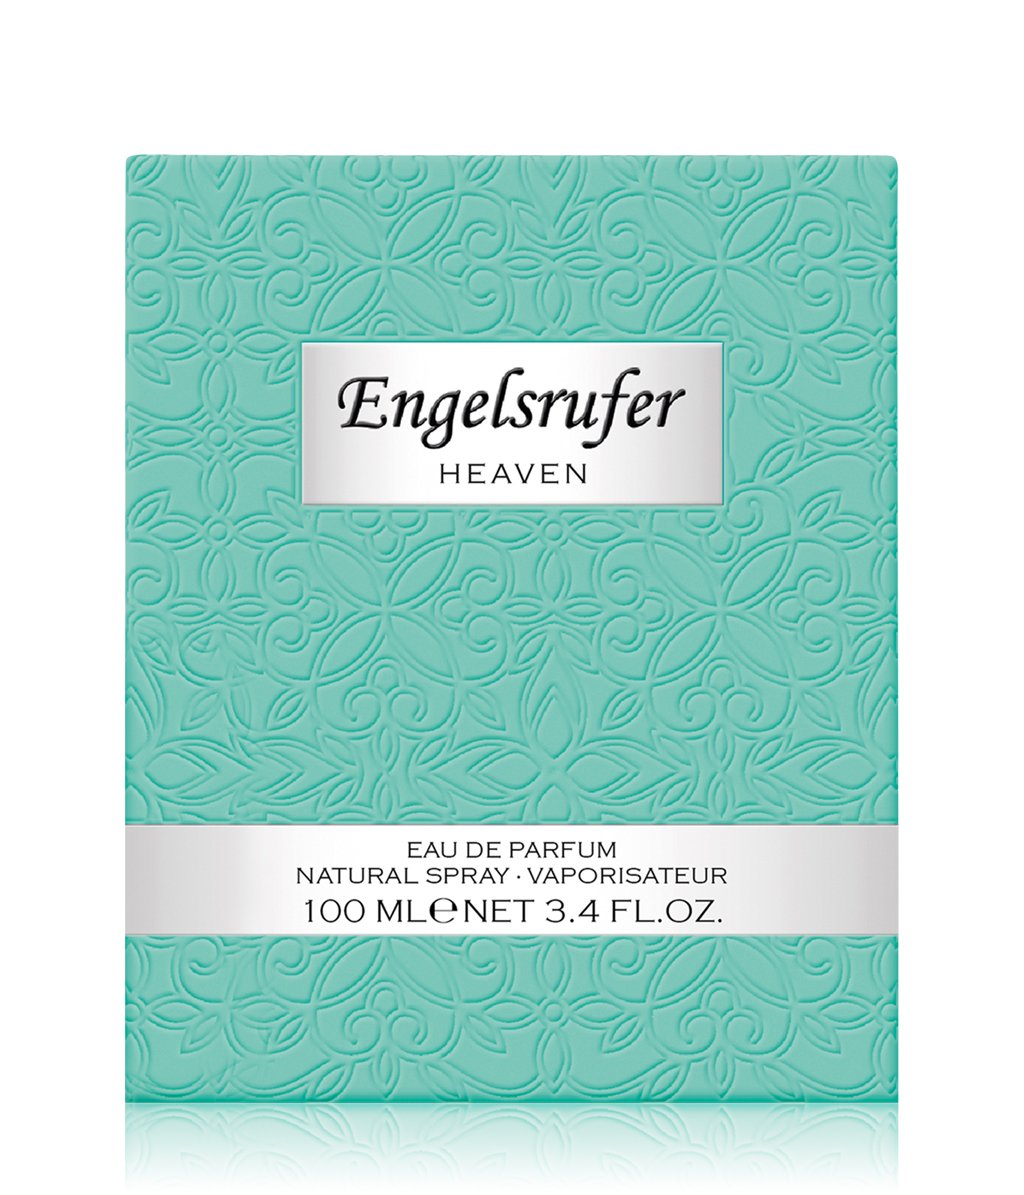 Heaven Engelsrufer perfume - a fragrance for women 2019